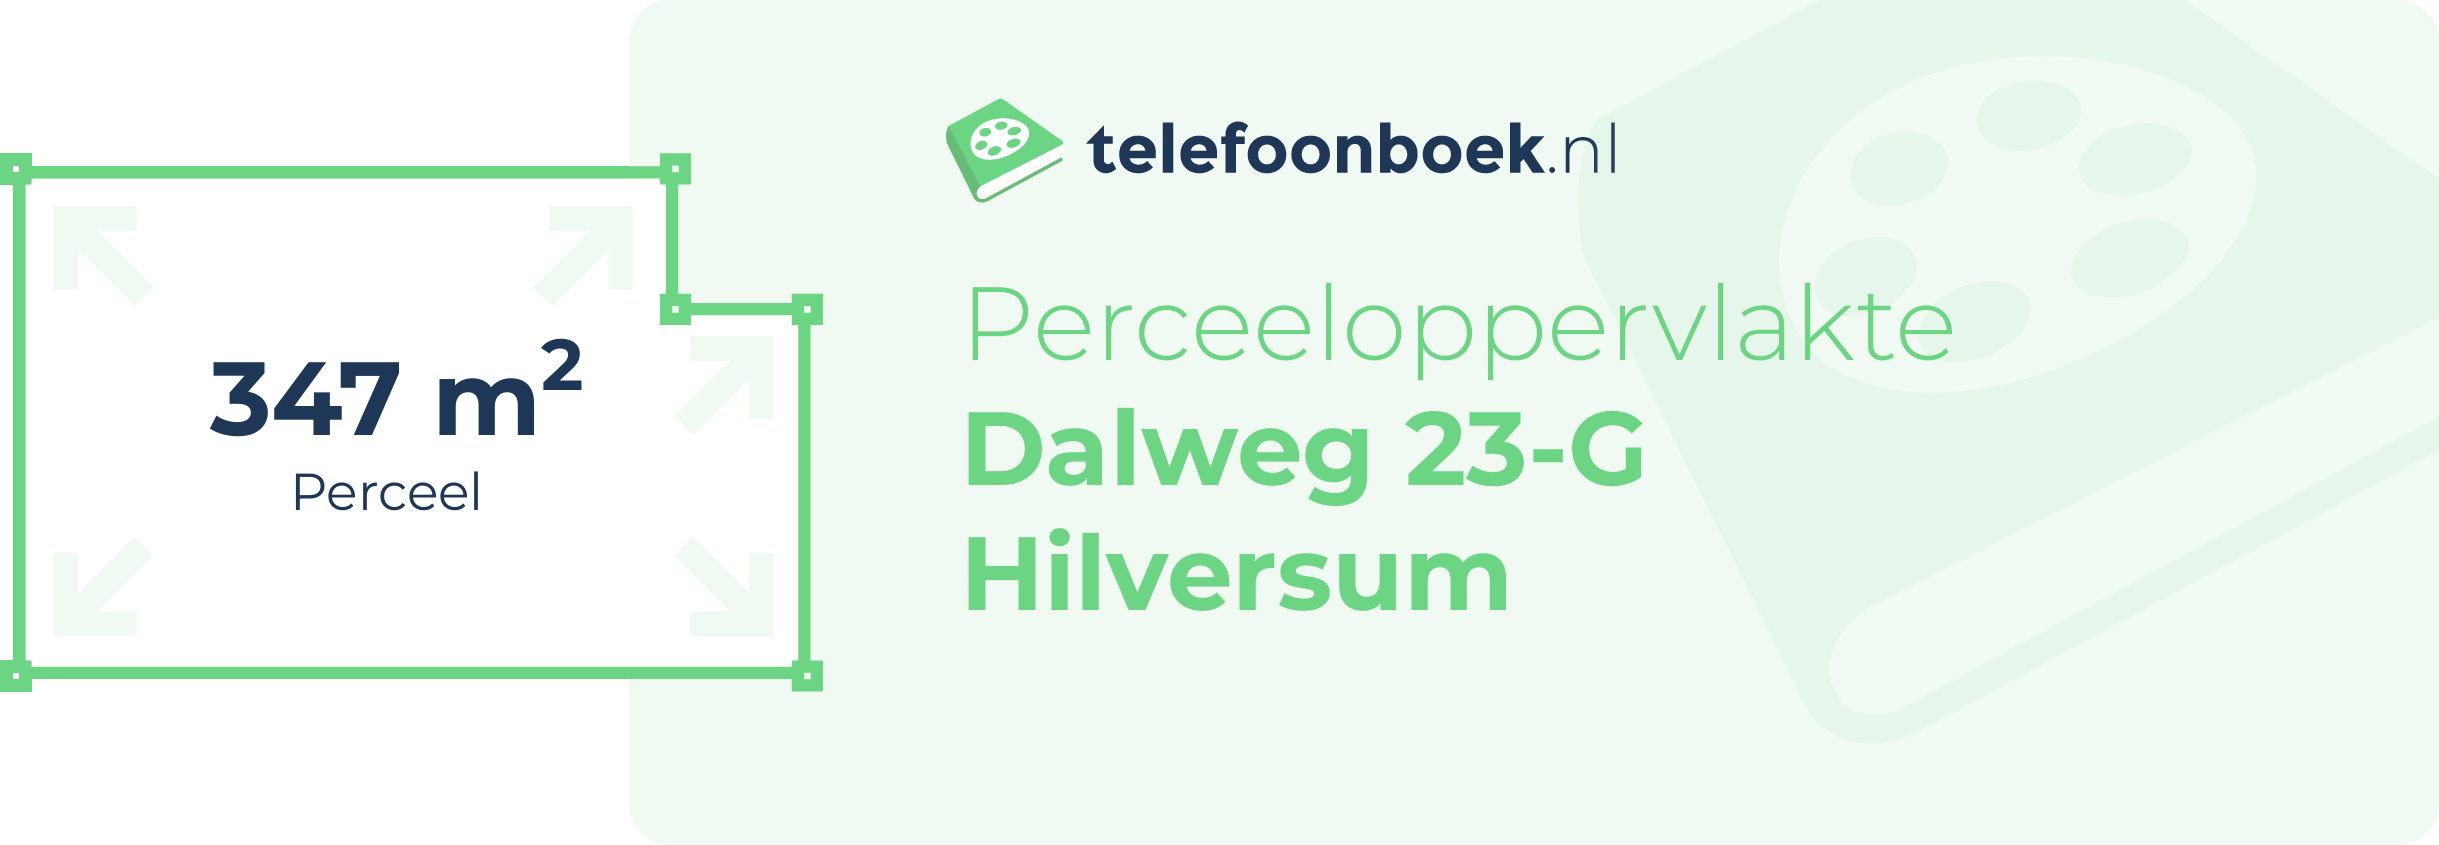 Perceeloppervlakte Dalweg 23-G Hilversum